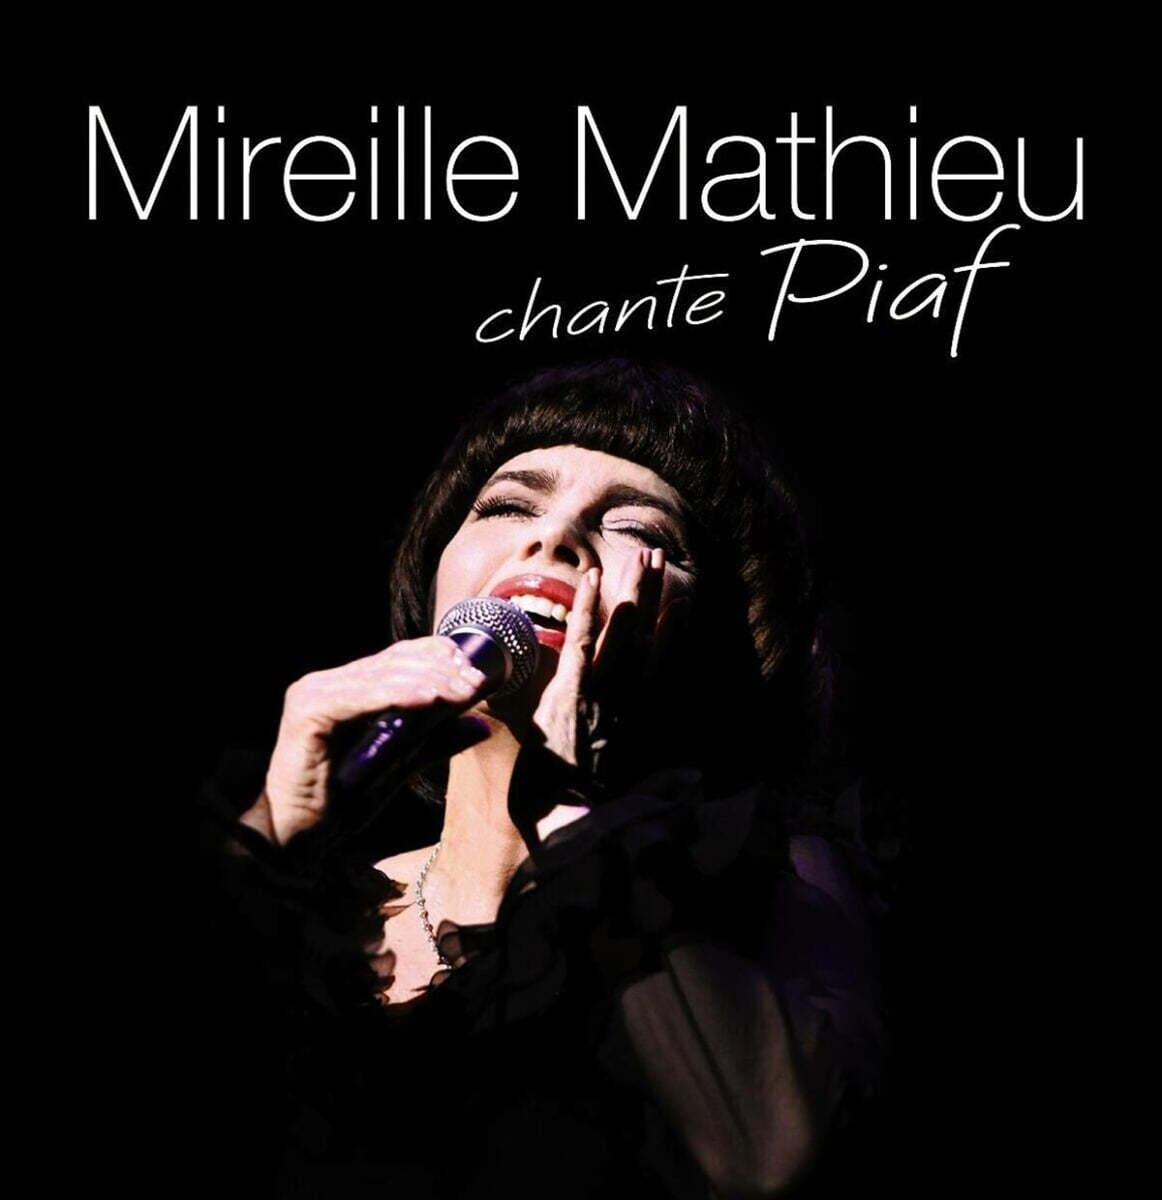 Mireille Mathieu (미레유 마티외) - Mireille Mathieu chante Piaf [2LP]